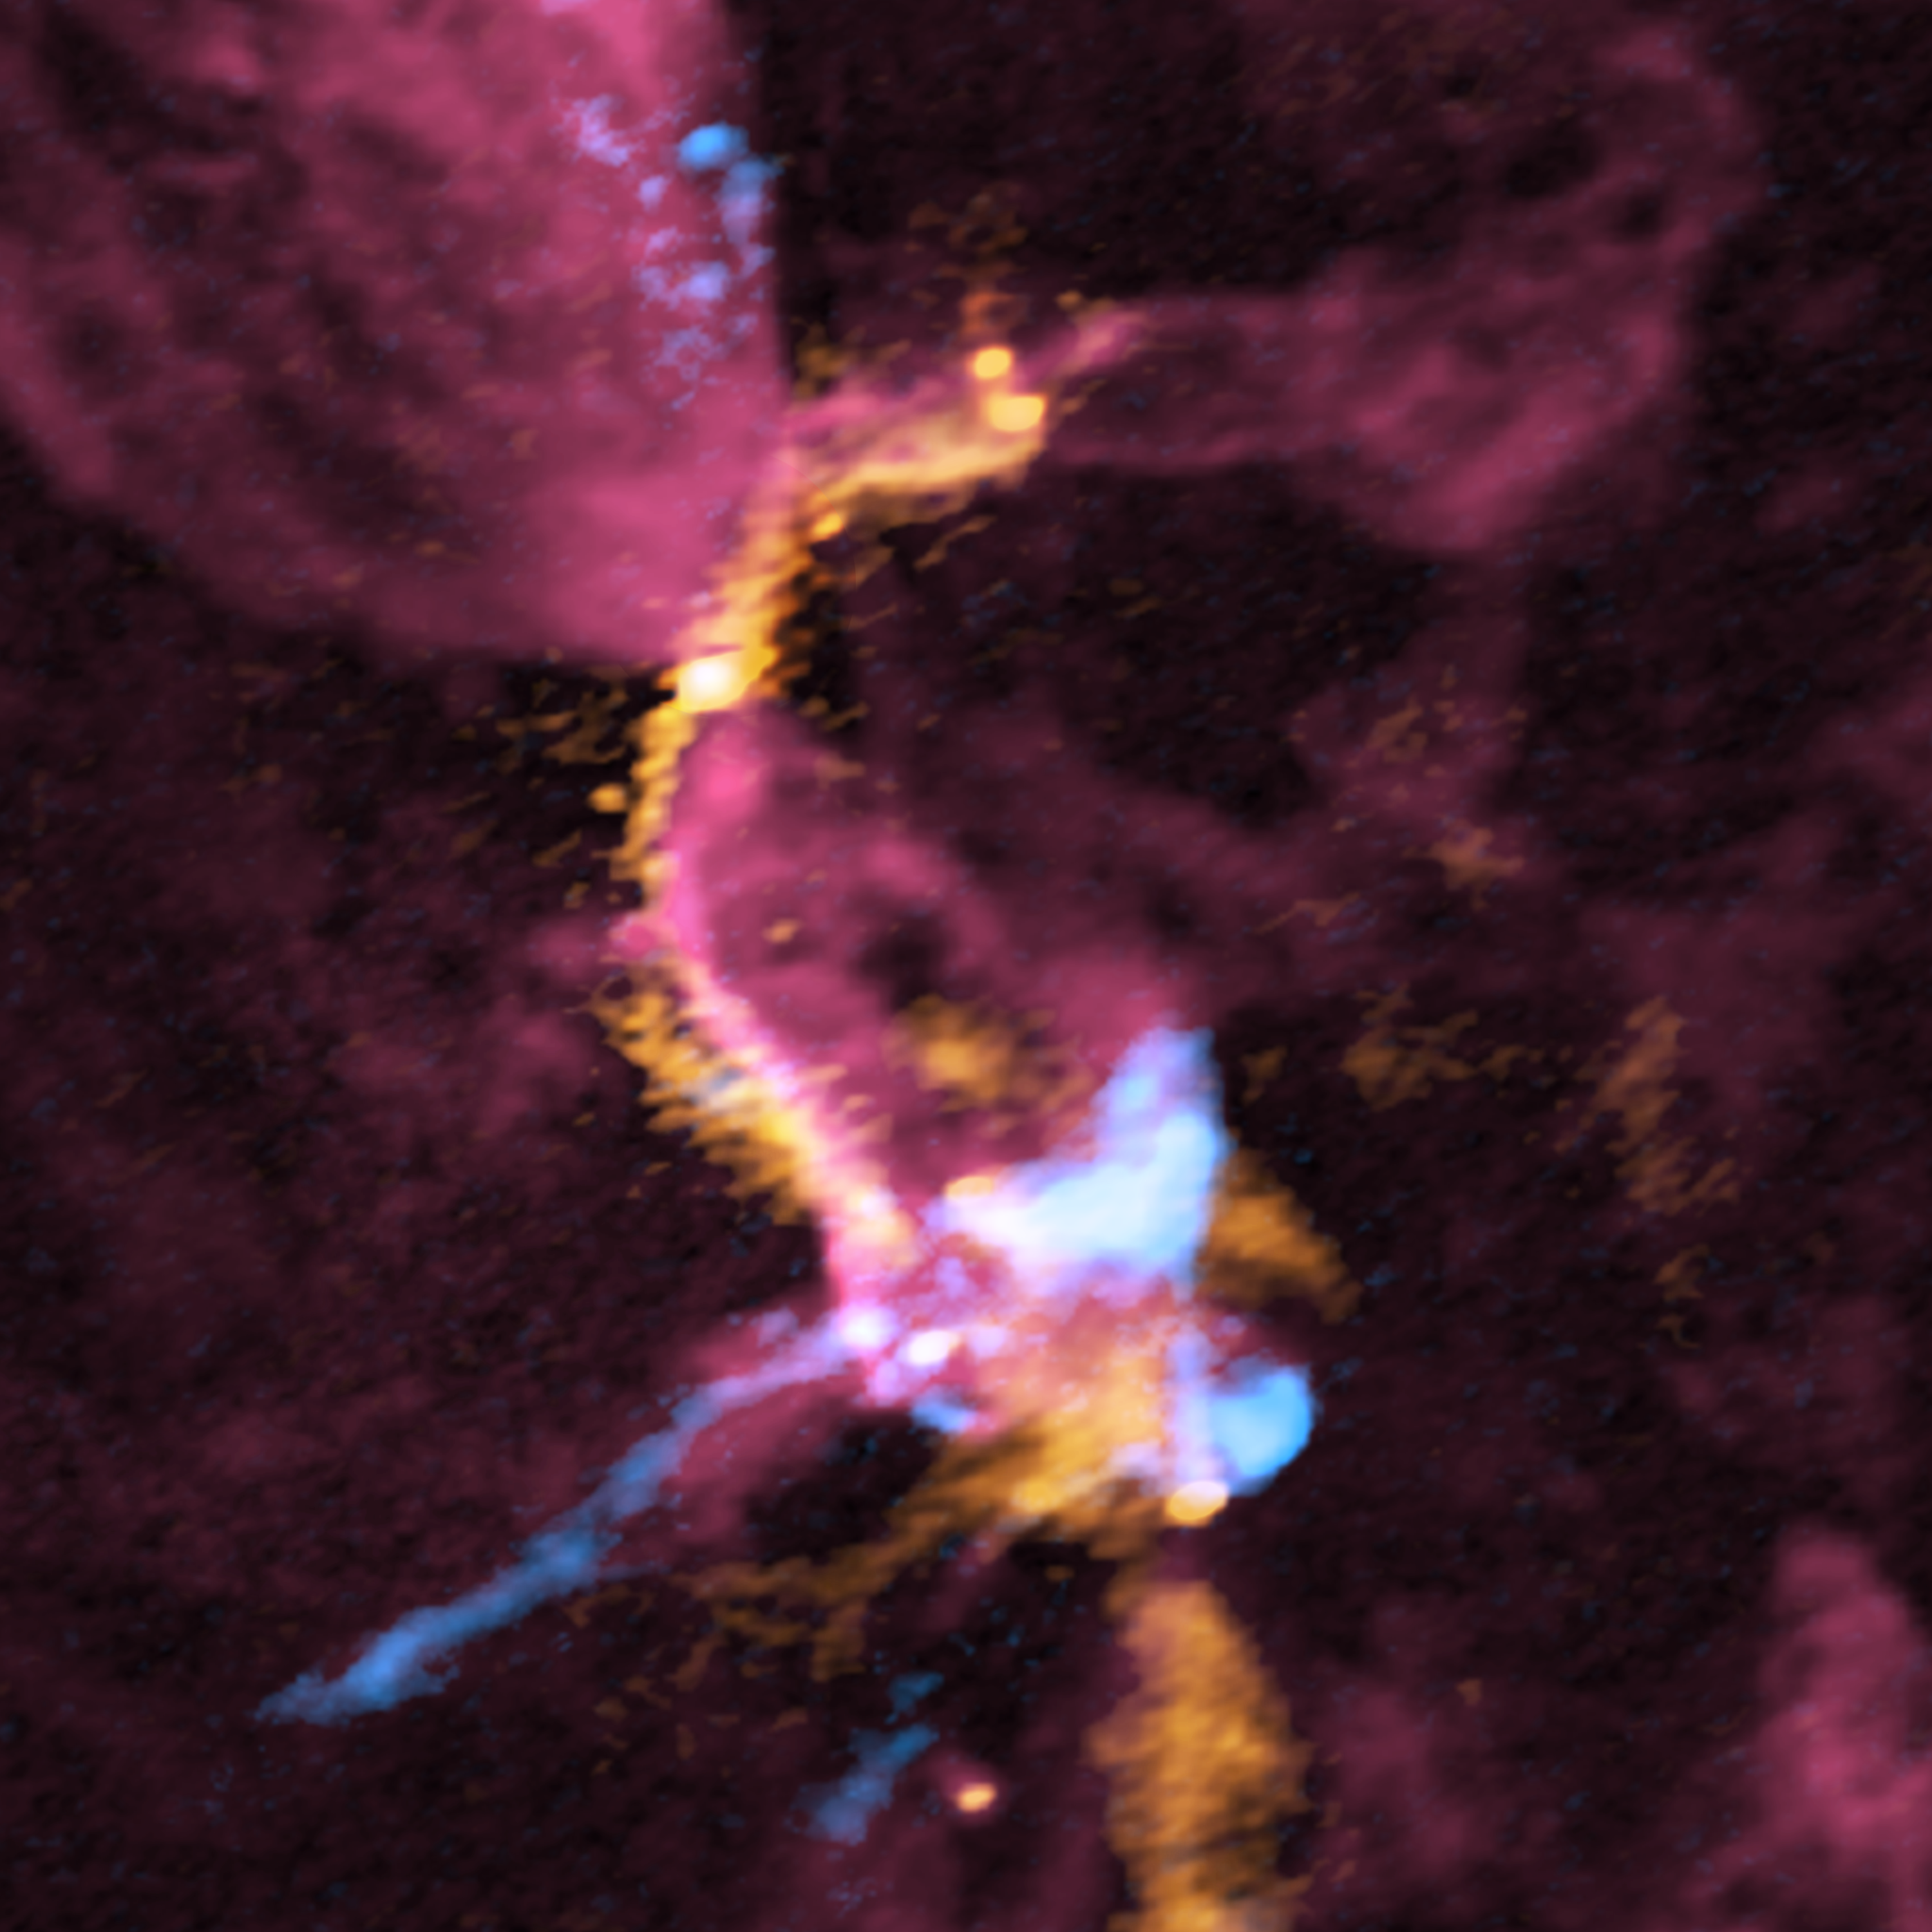 Imagen compuesta de la región de formación de cúmulos OMC-2 FIR3/4 obtenida con ALMA (en rojo se representa el gas de monóxido de carbono; en naranja, las emisiones del polvo; y en azul, el gas de monóxido de silicio). Las zonas donde los colores son más claros equivalen a señales de radio más intensas. La región FIR 3 se ubica en la zona superior izquierda de la imagen, mientras que FIR 4 corresponde a la parte inferior derecha. El chorro molecular gigante emanado de la protoestrella en la región FIR 3 (en rojo) entra en colisión con la nube molecular filamentosa (en naranja) y se comprime (en rosado). El chorro de gas también choca con gas denso hacia el final de su trayectoria (en naranja), donde se forman varias estrellas nuevas (señaladas por círculos verdes en la región FIR 4). El gas de monóxido de silicio revela las capas de choque (en azul claro). La barra blanca en la esquina inferior derecha muestra una escala de 4.000 unidades astronómicas (UA). Créditos: ALMA (ESO/NAOJ/NRAO), A. Sato et al.